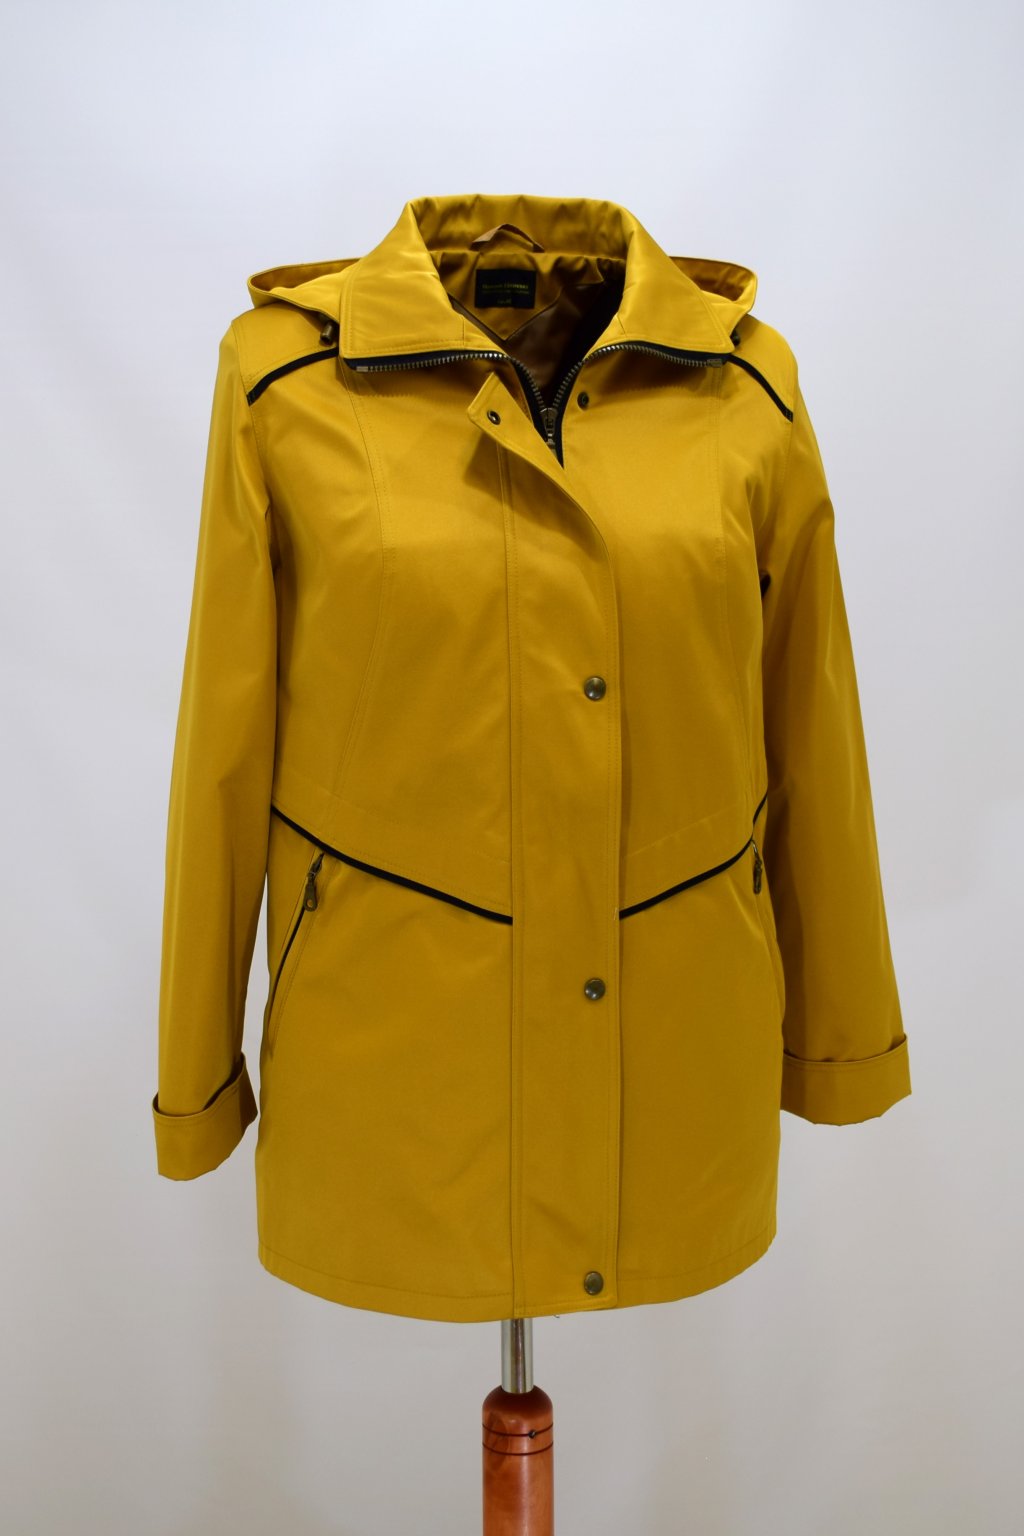 Dámská žlutá jarní bunda Edita nadměrné velikosti.